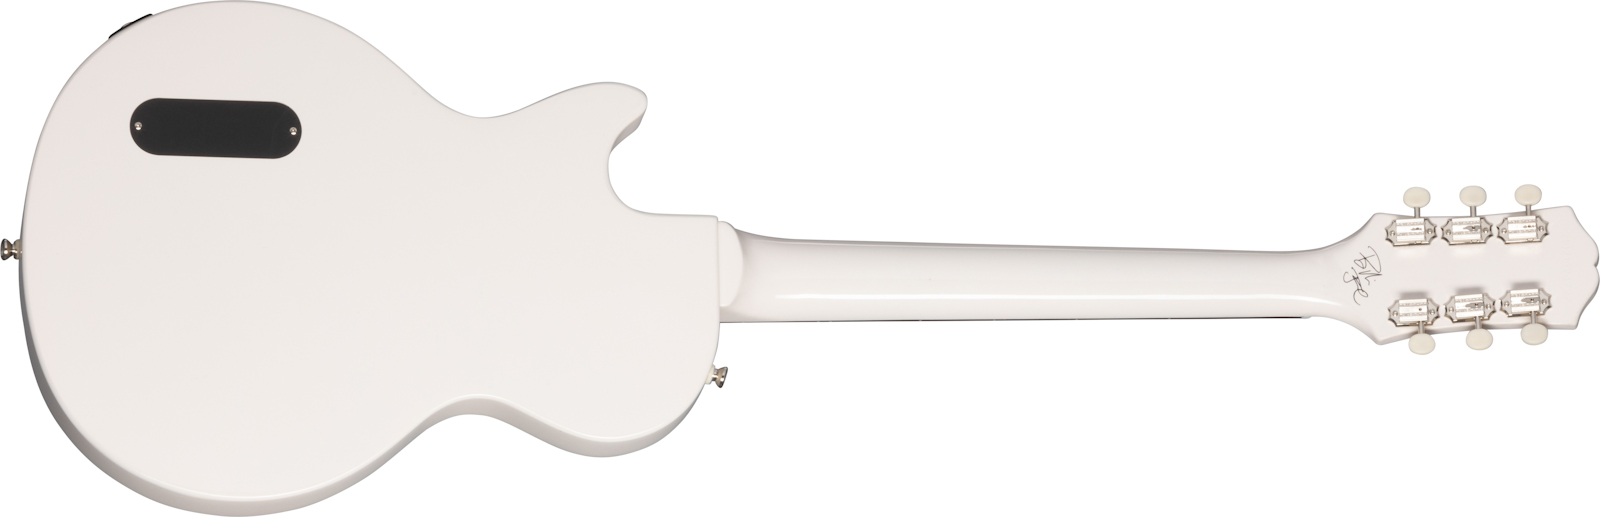 Epiphone Billie Joe Armstrong Les Paul Junior Signature S P90 Ht Lau - Classic White - Guitare Électrique Single Cut - Variation 1